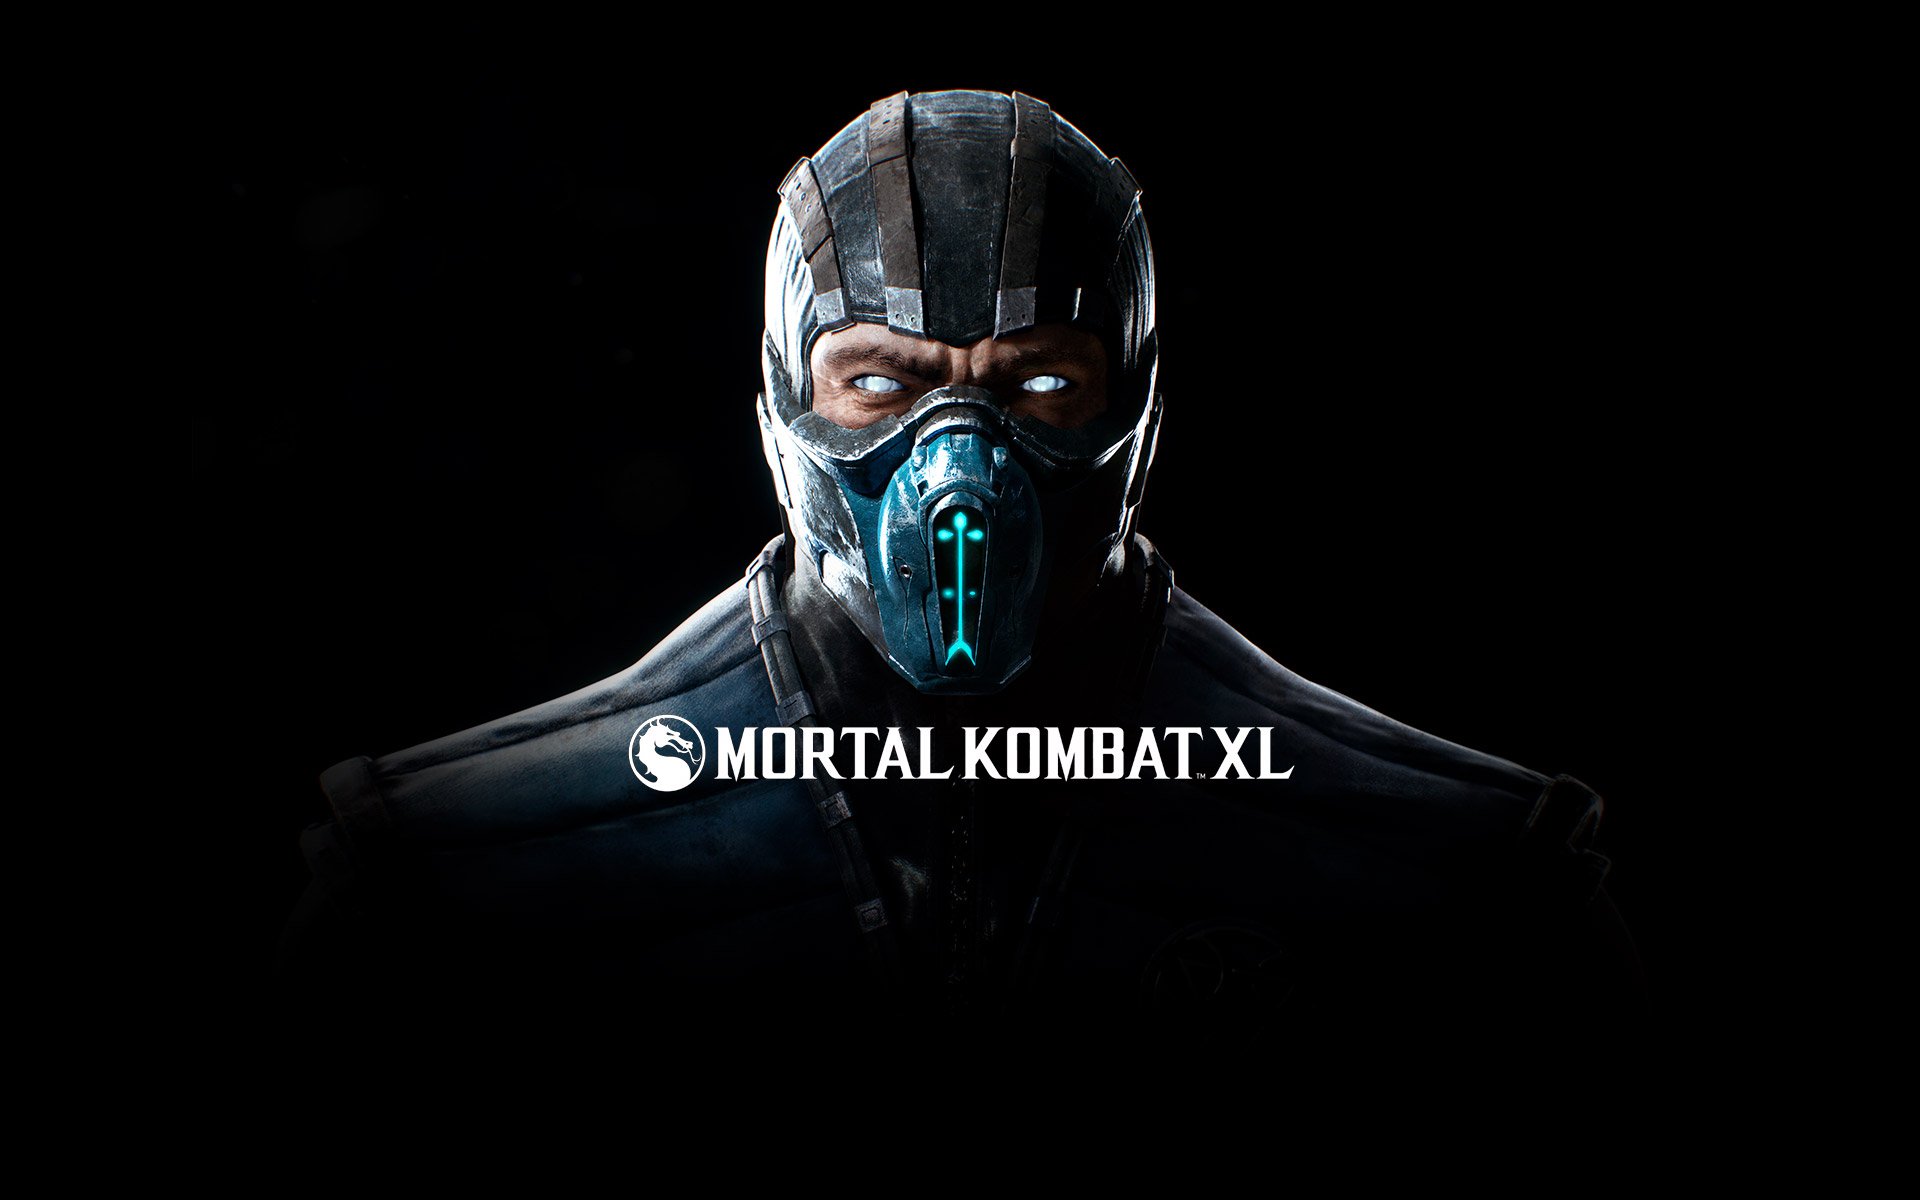 Compre Mortal Kombat a partir de R$ 59.90